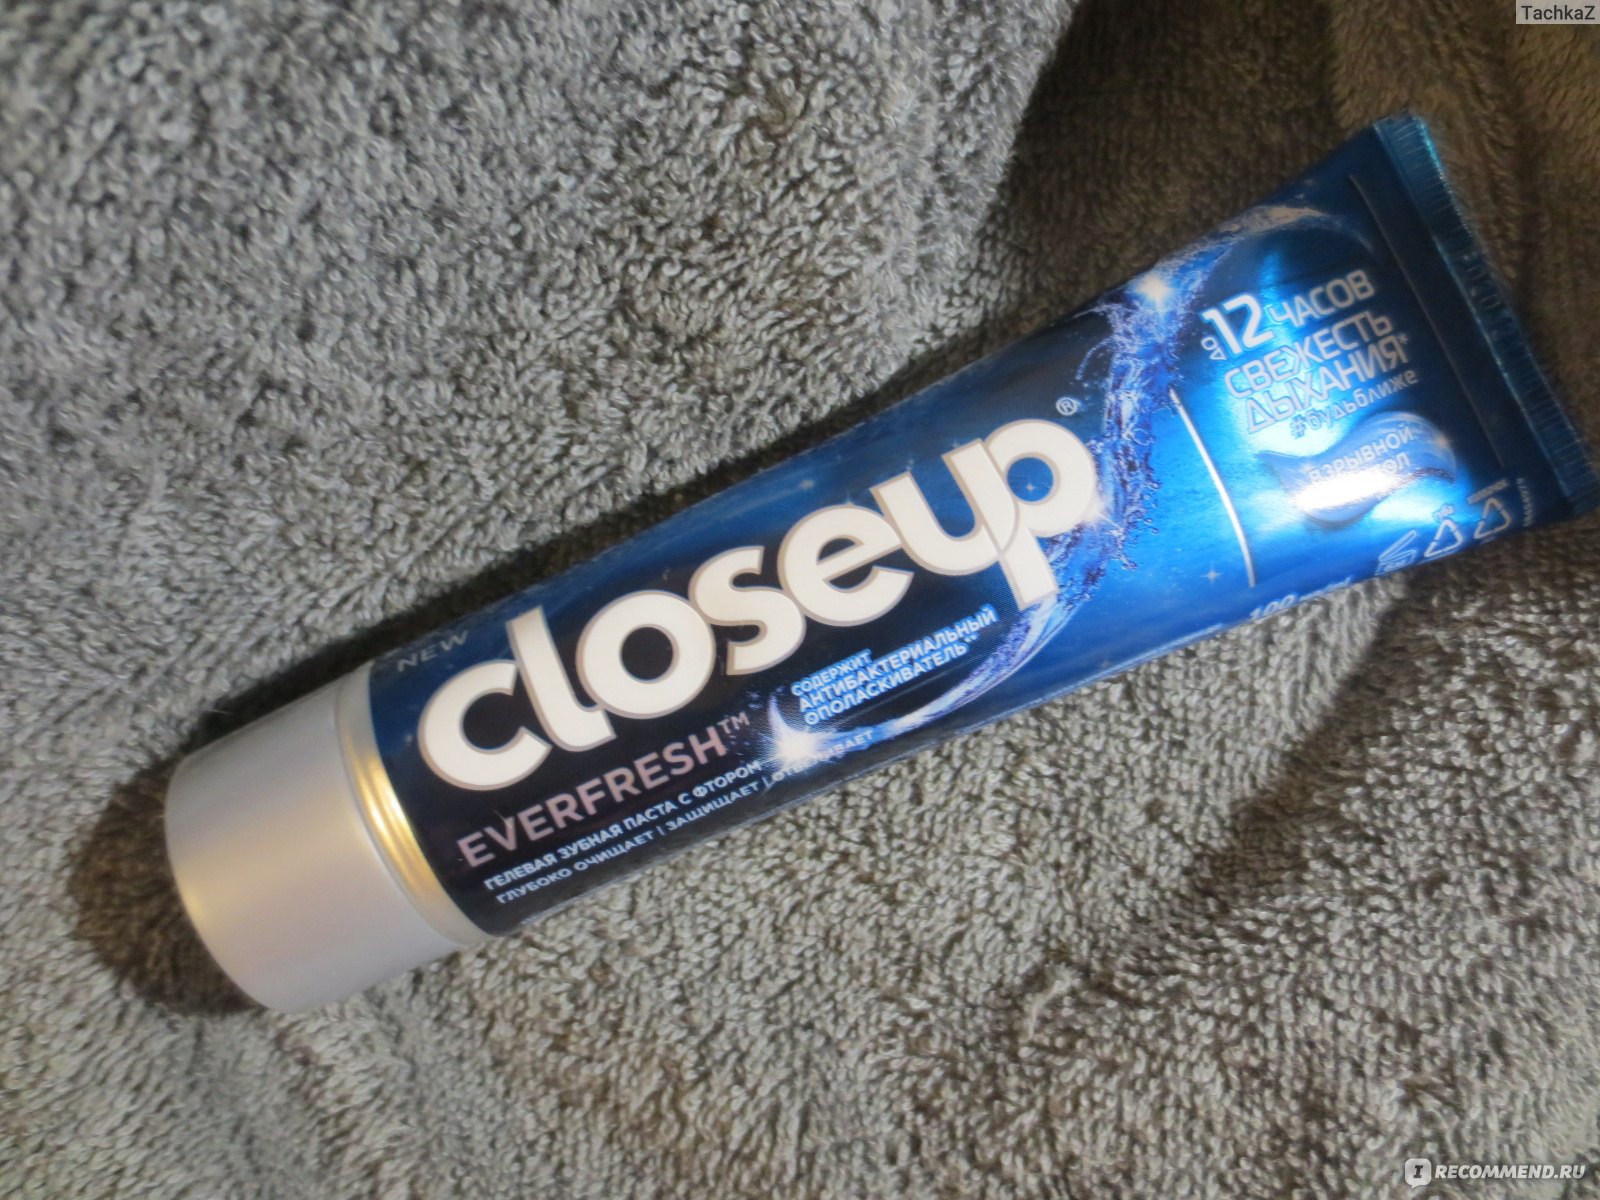 Зубная паста Closeup Взрывной ментол